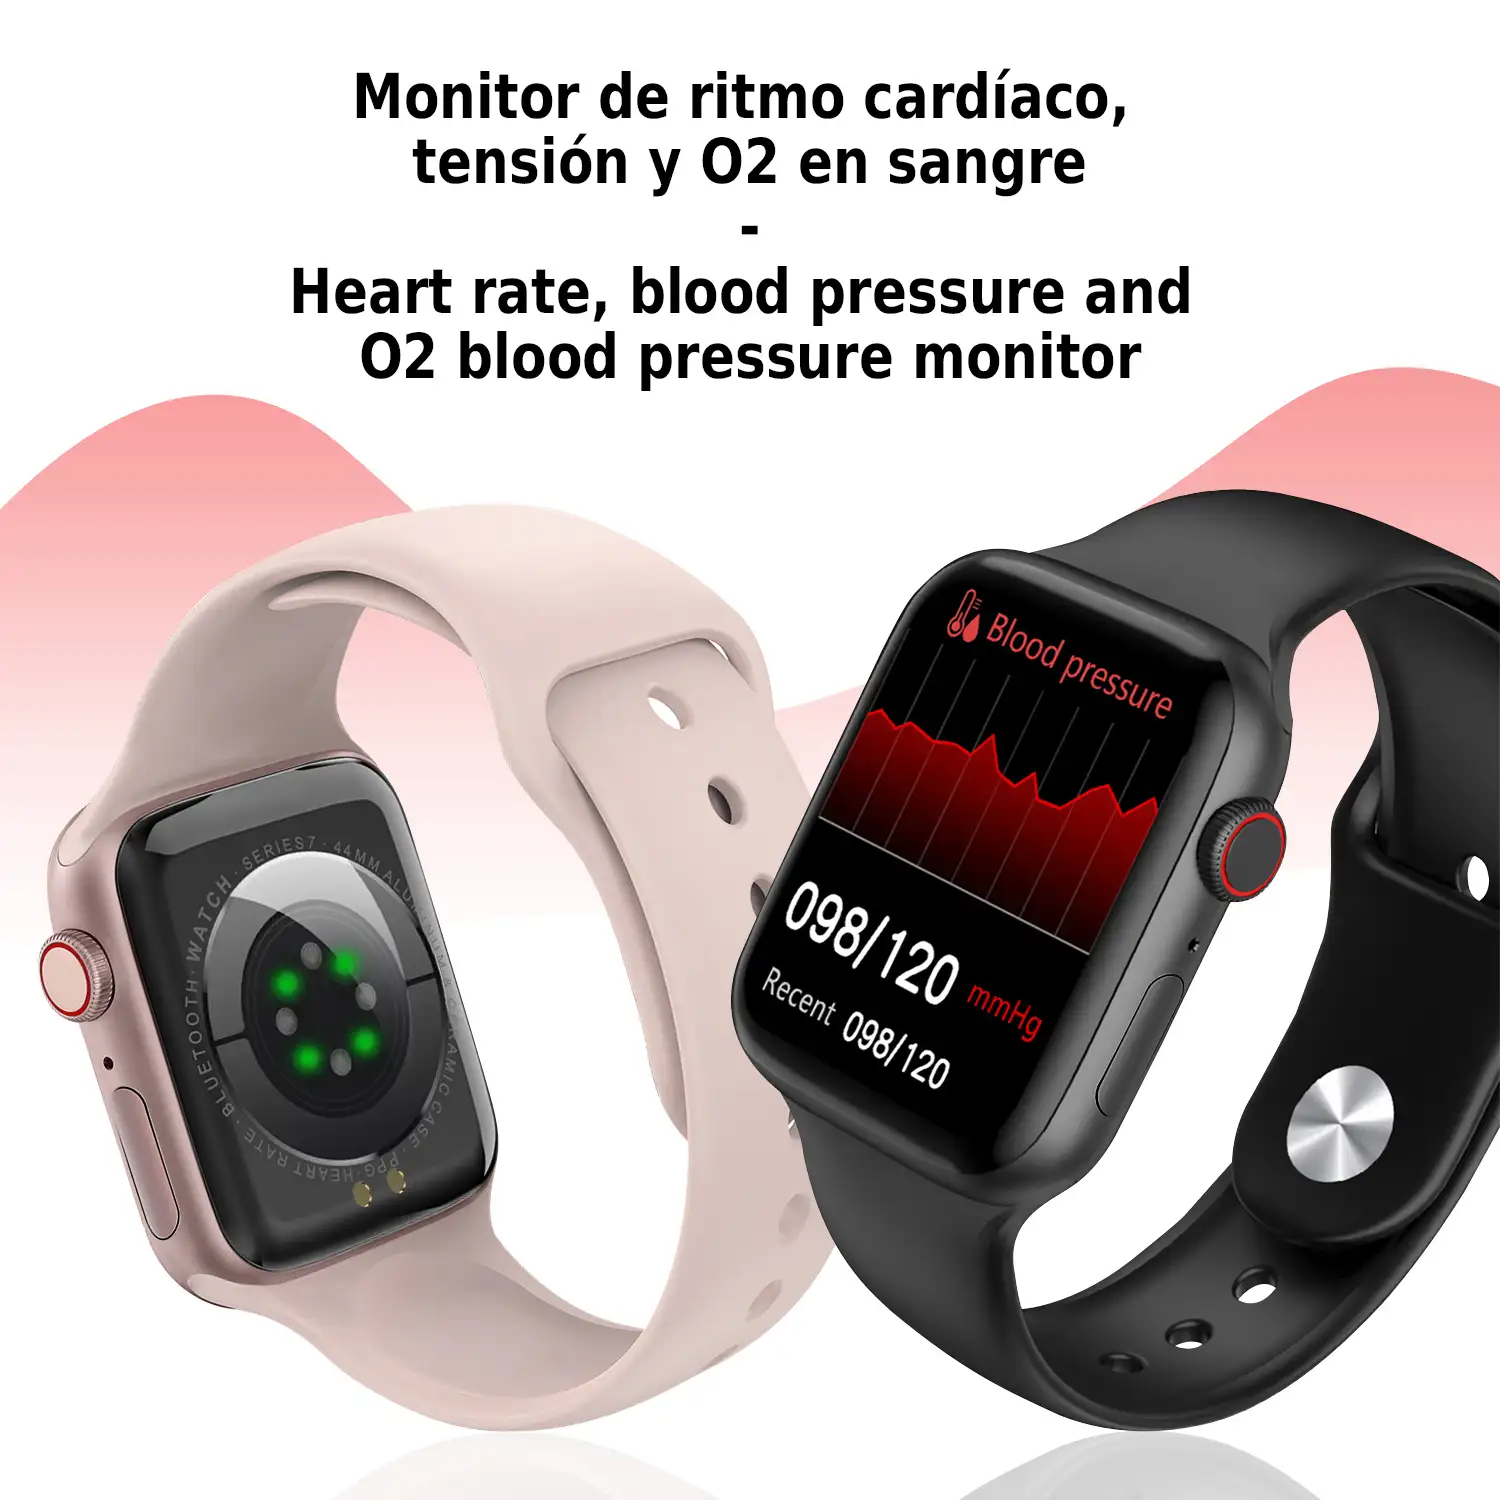 Smartwatch W27 con monitor cardíaco, tensión y de O2 en sangre. Modos deportivos indoor y exteriores. Corona multifunción inteligente.